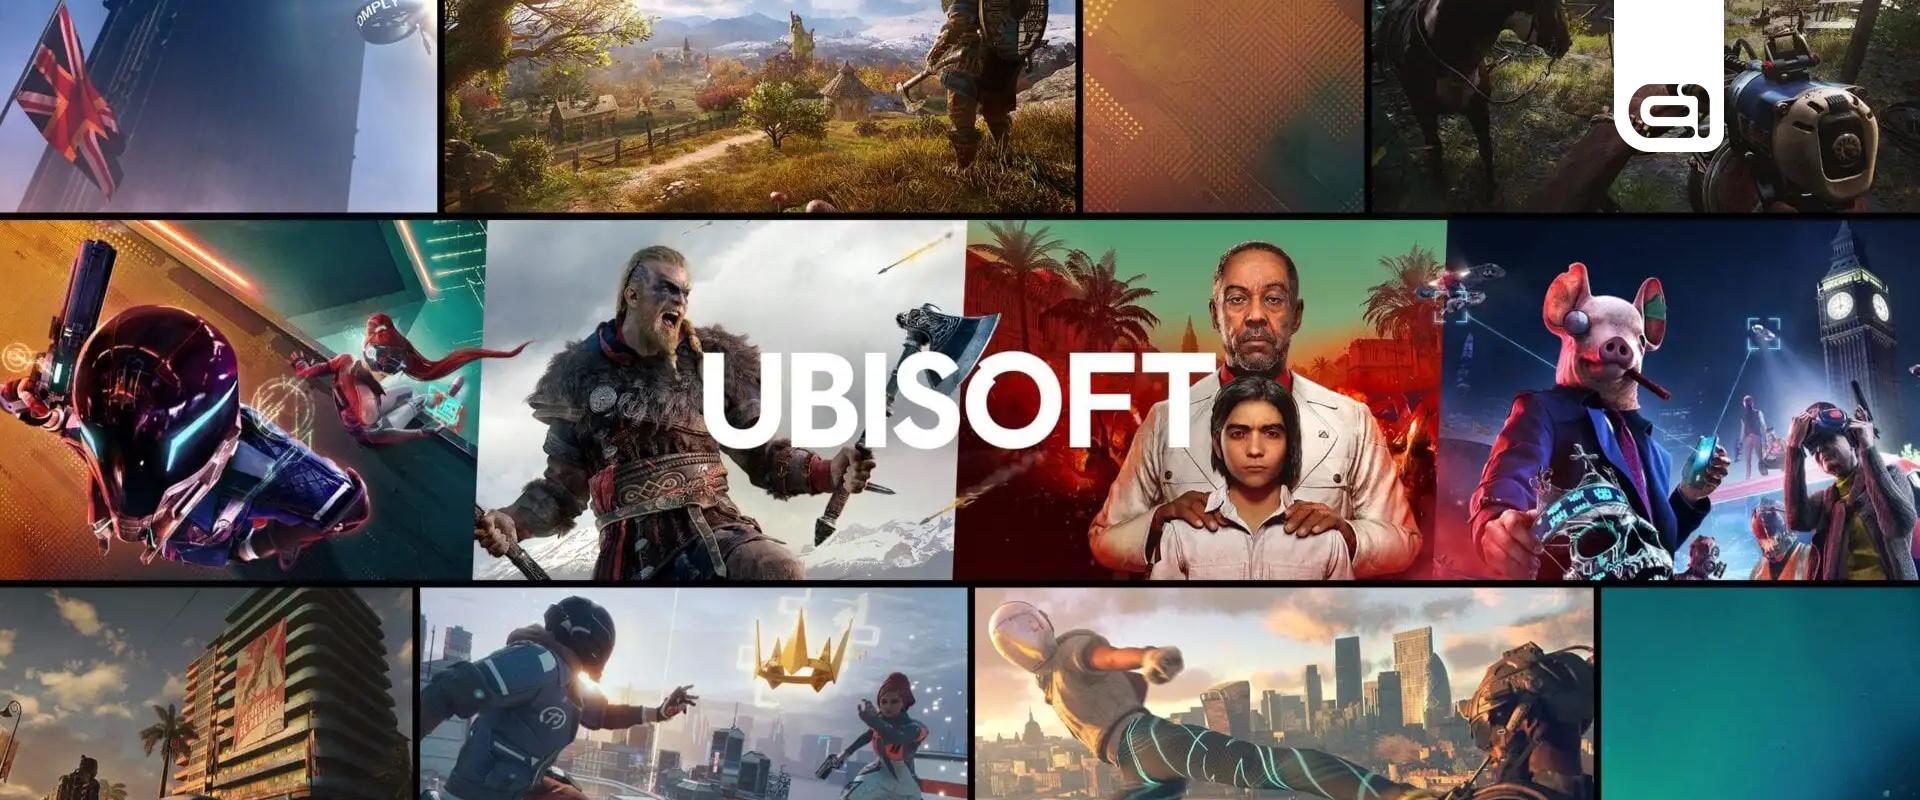 Nagy port kavart a Ubisoft fejesének levele, sztrájkba léphetnek a dolgozók